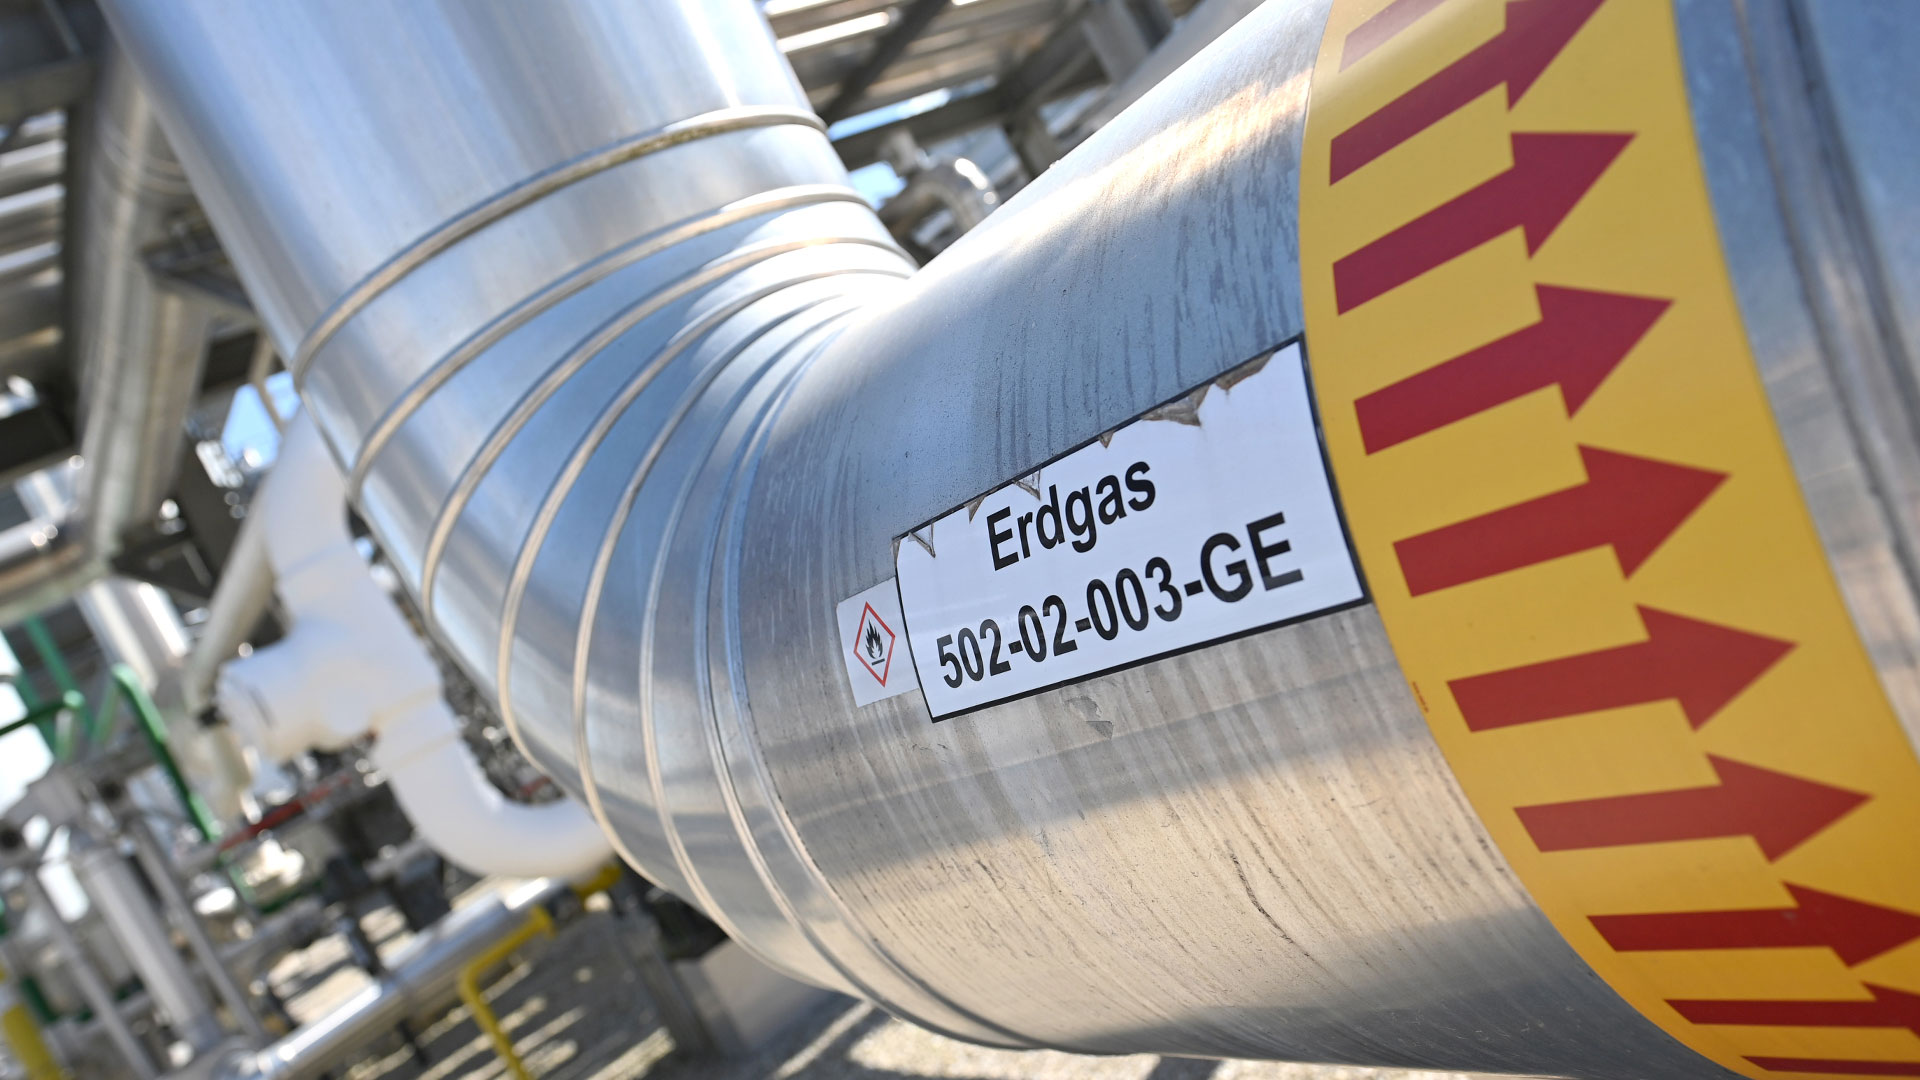 Hohe Energiepreise: SPD kündigt Ende der Gasumlage an